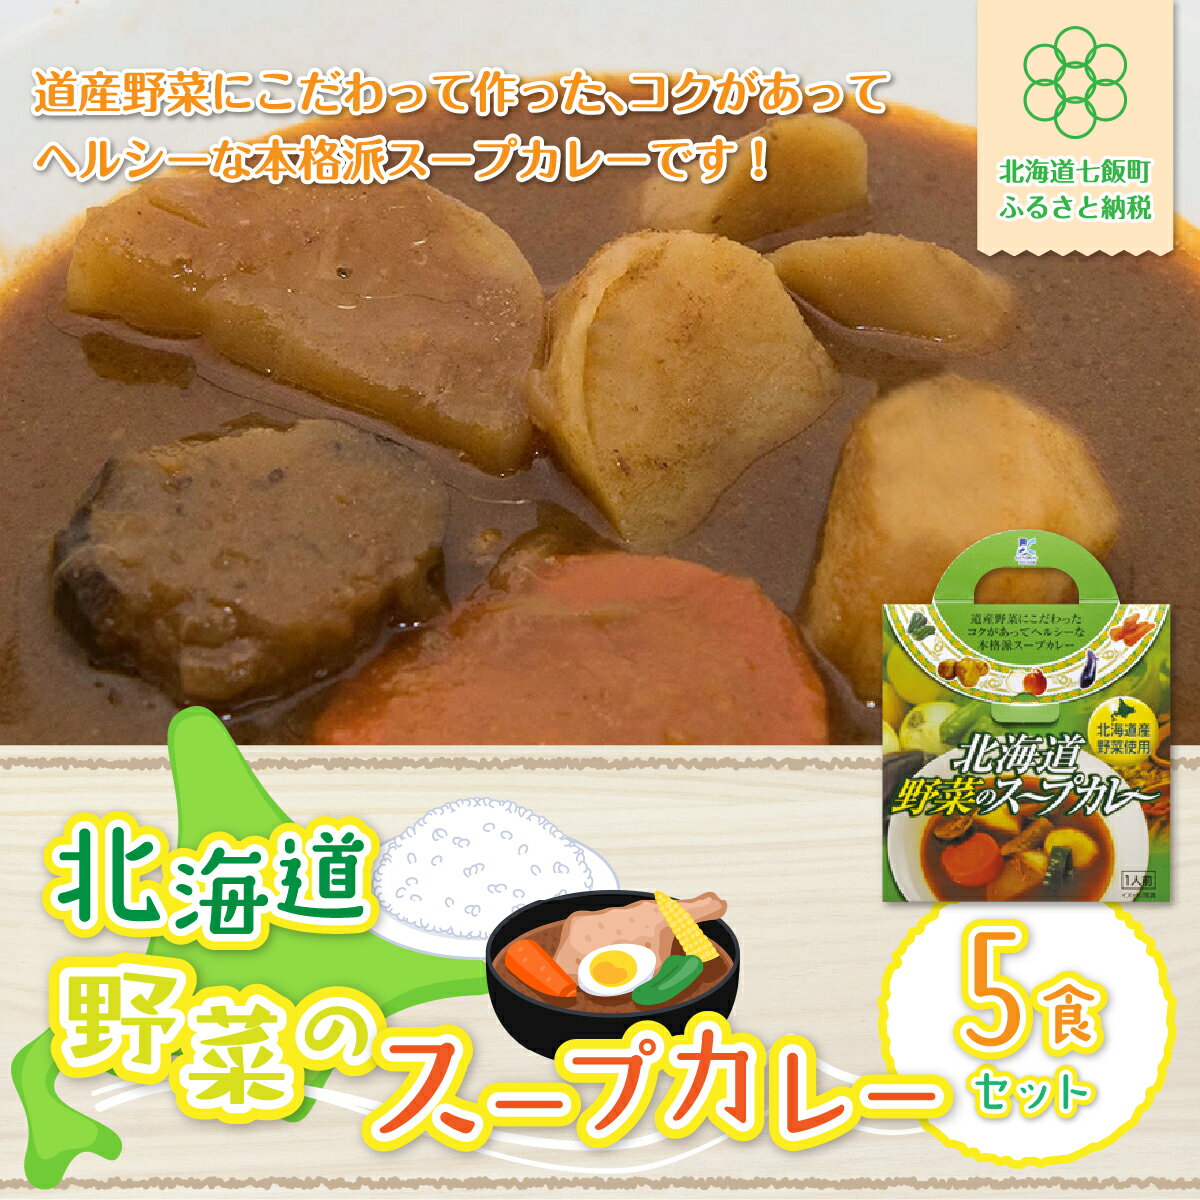 【北海道野菜のスープカレー】5食セット 北海道産野菜使用 スープカレー 野菜 ベジタリアン カレーライス 北海道産 NAO019